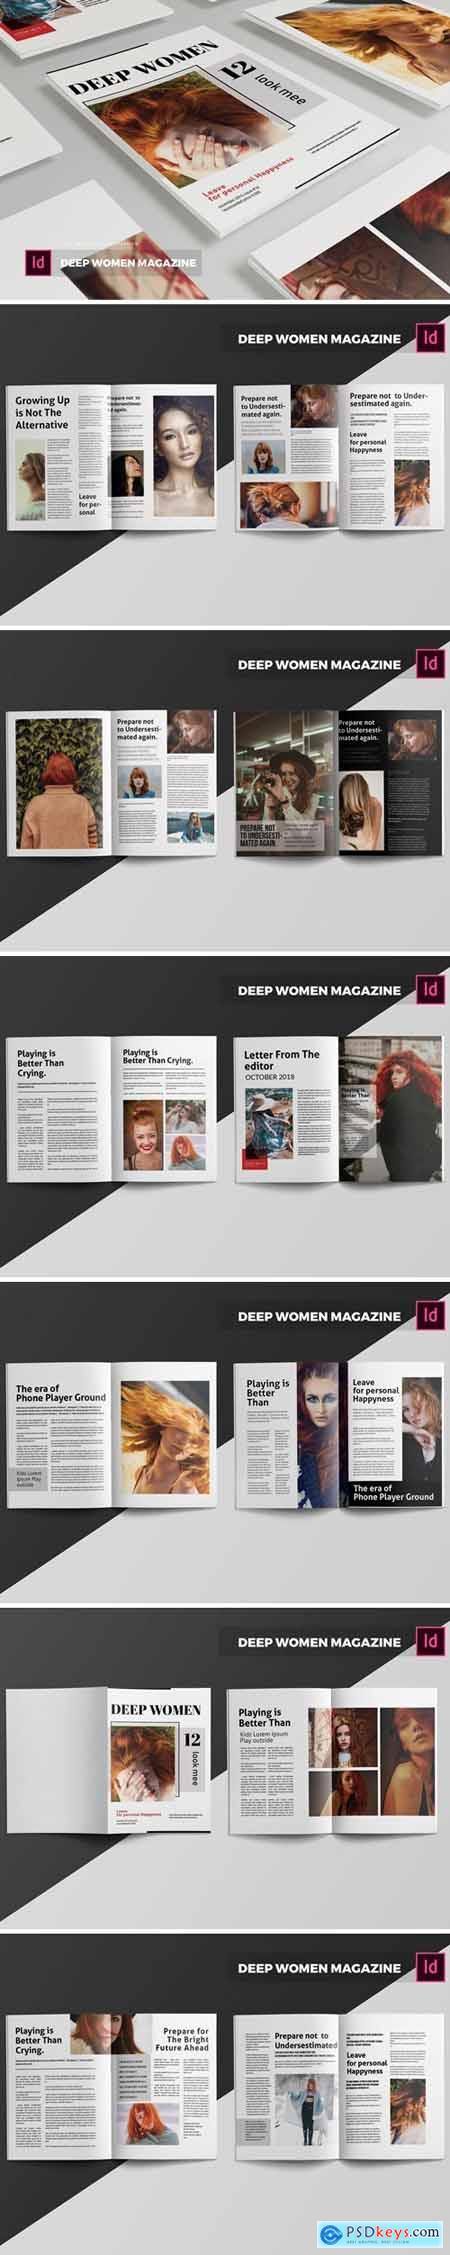 Deep Women Magazine Template